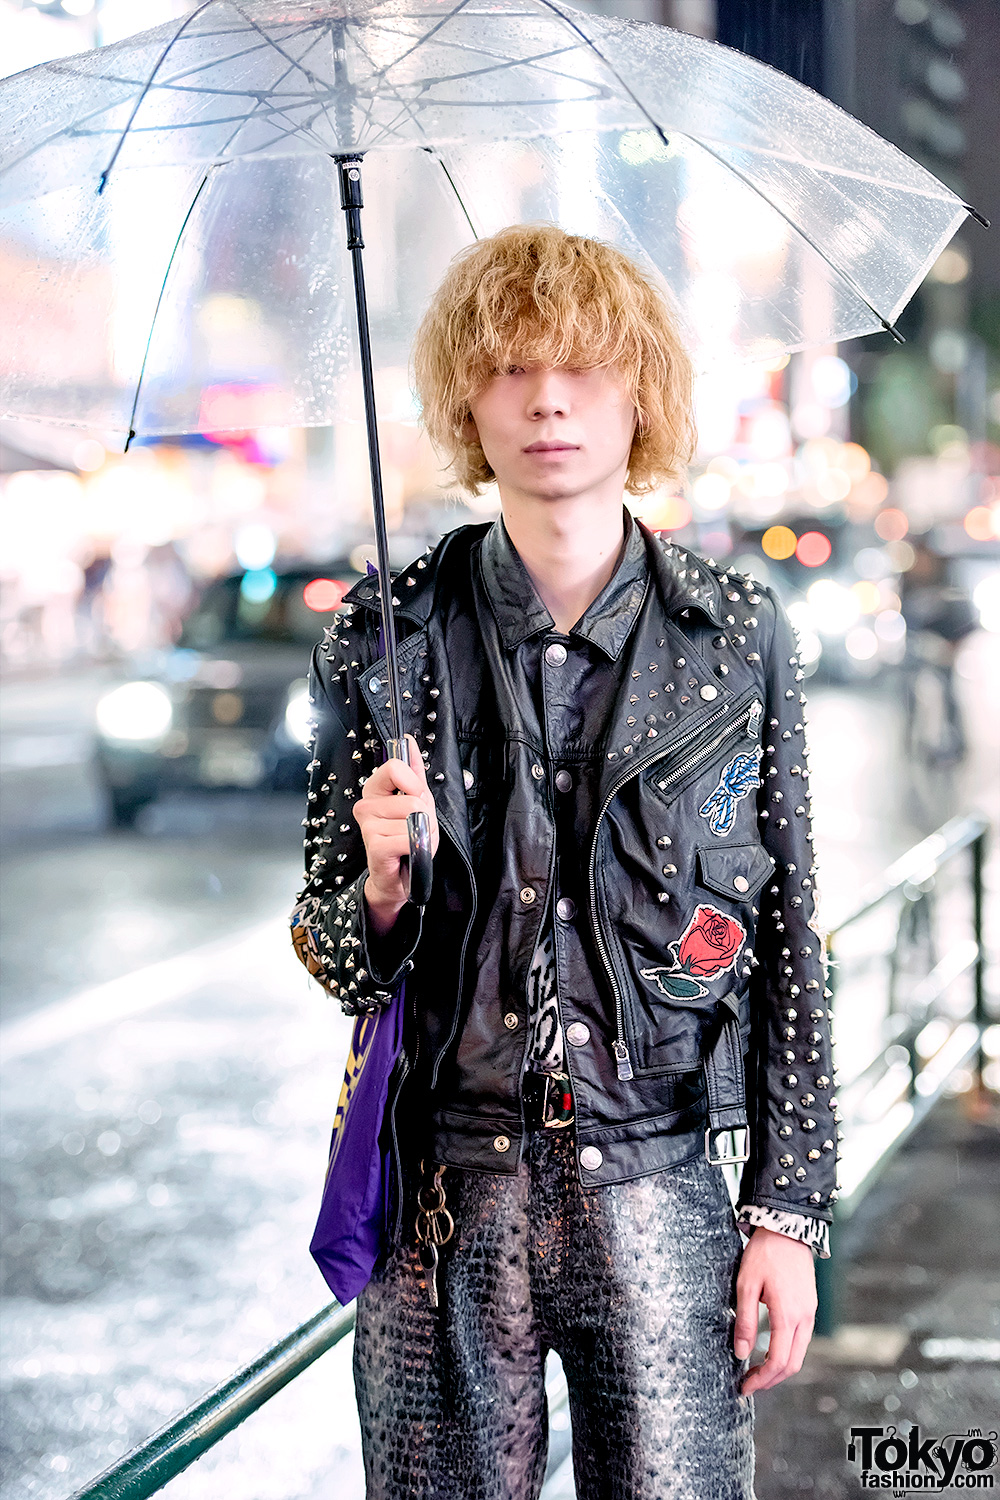 Rainy Weather Harajuku Street Style w/ Studded Leather Jacket